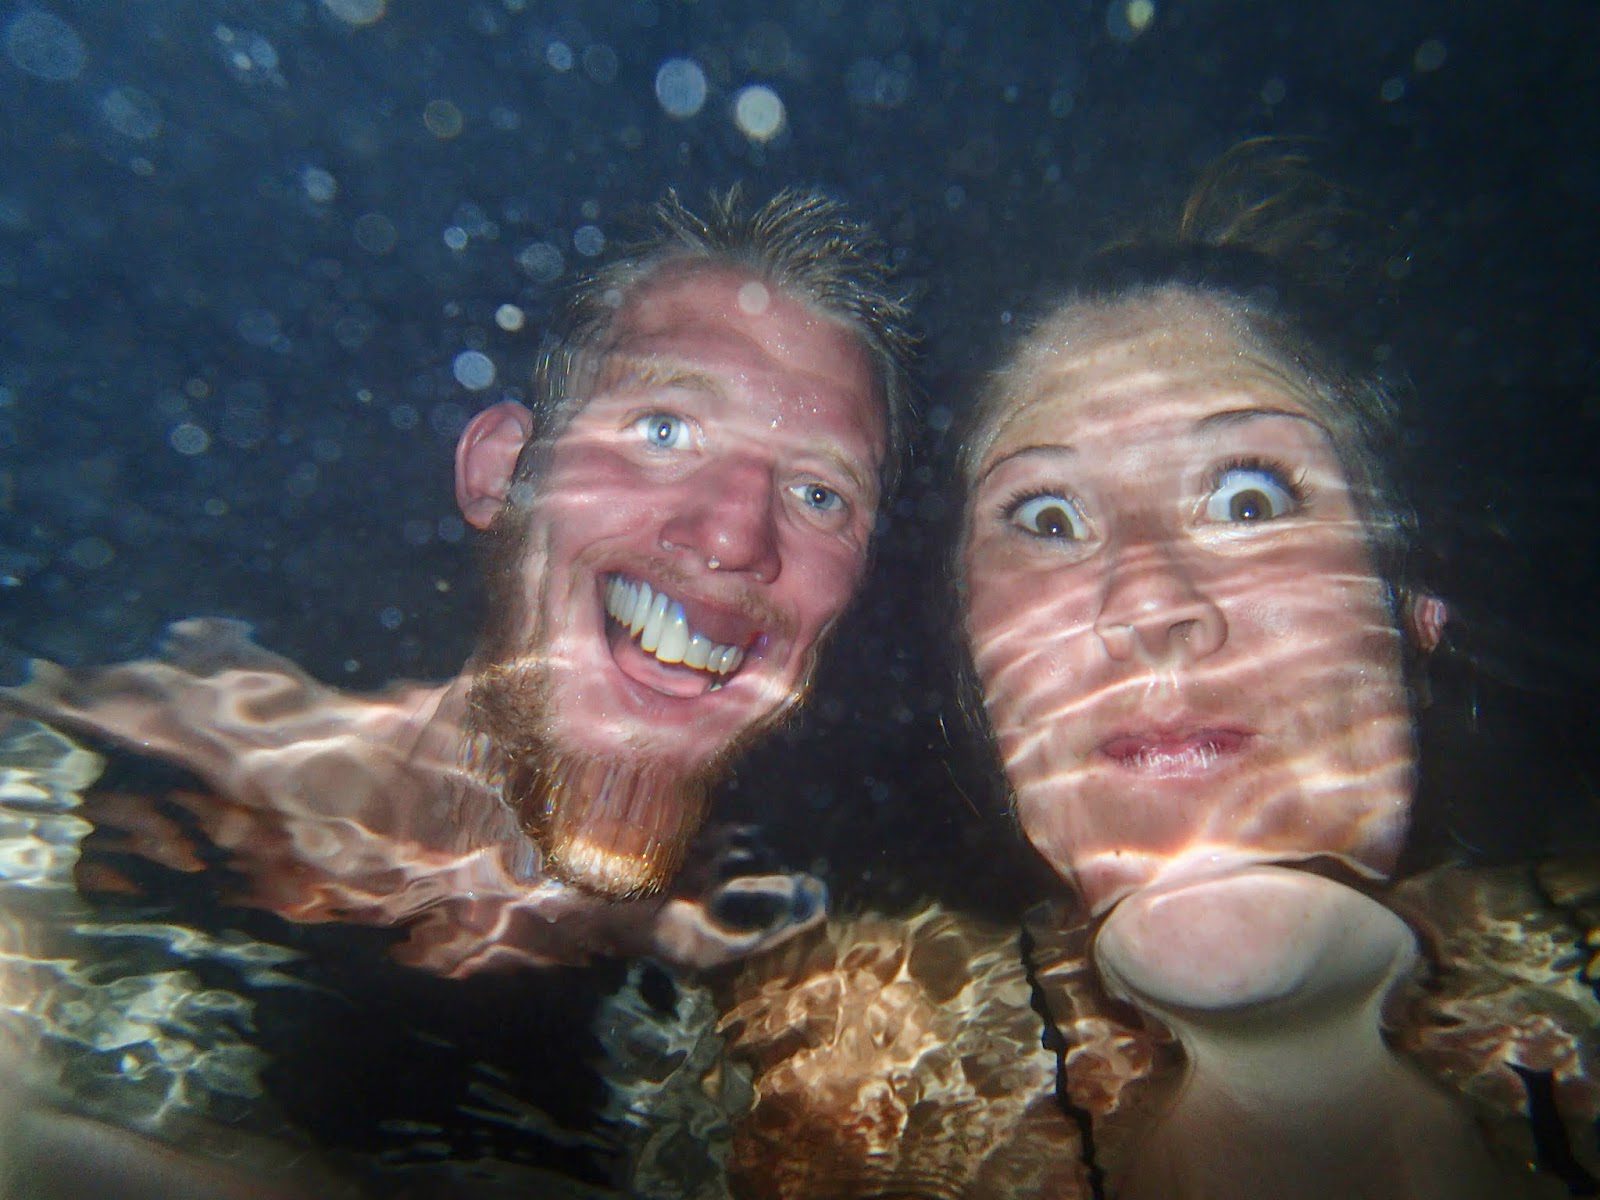 Underwater, cartoon-y selfie!